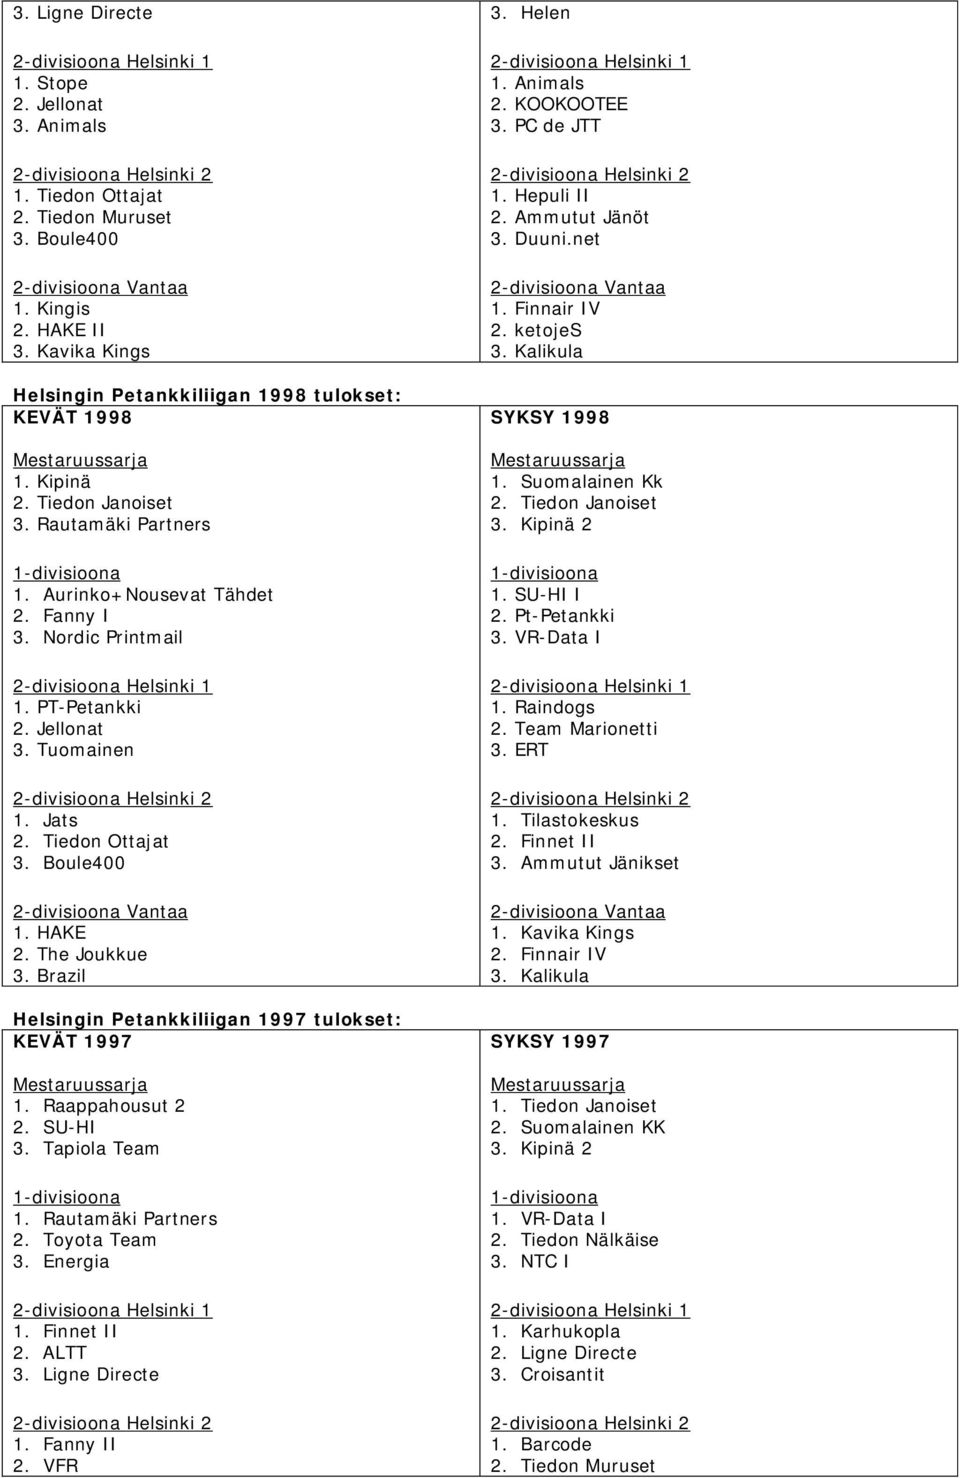 Brazil Helsingin Petankkiliigan 1997 tulokset: KEVÄT 1997 1. Raappahousut 2 2. SU-HI 3. Tapiola Team 1. Rautamäki Partners 2. Toyota Team 3. Energia 1. Finnet II 2. ALTT 3. Ligne Directe 1.